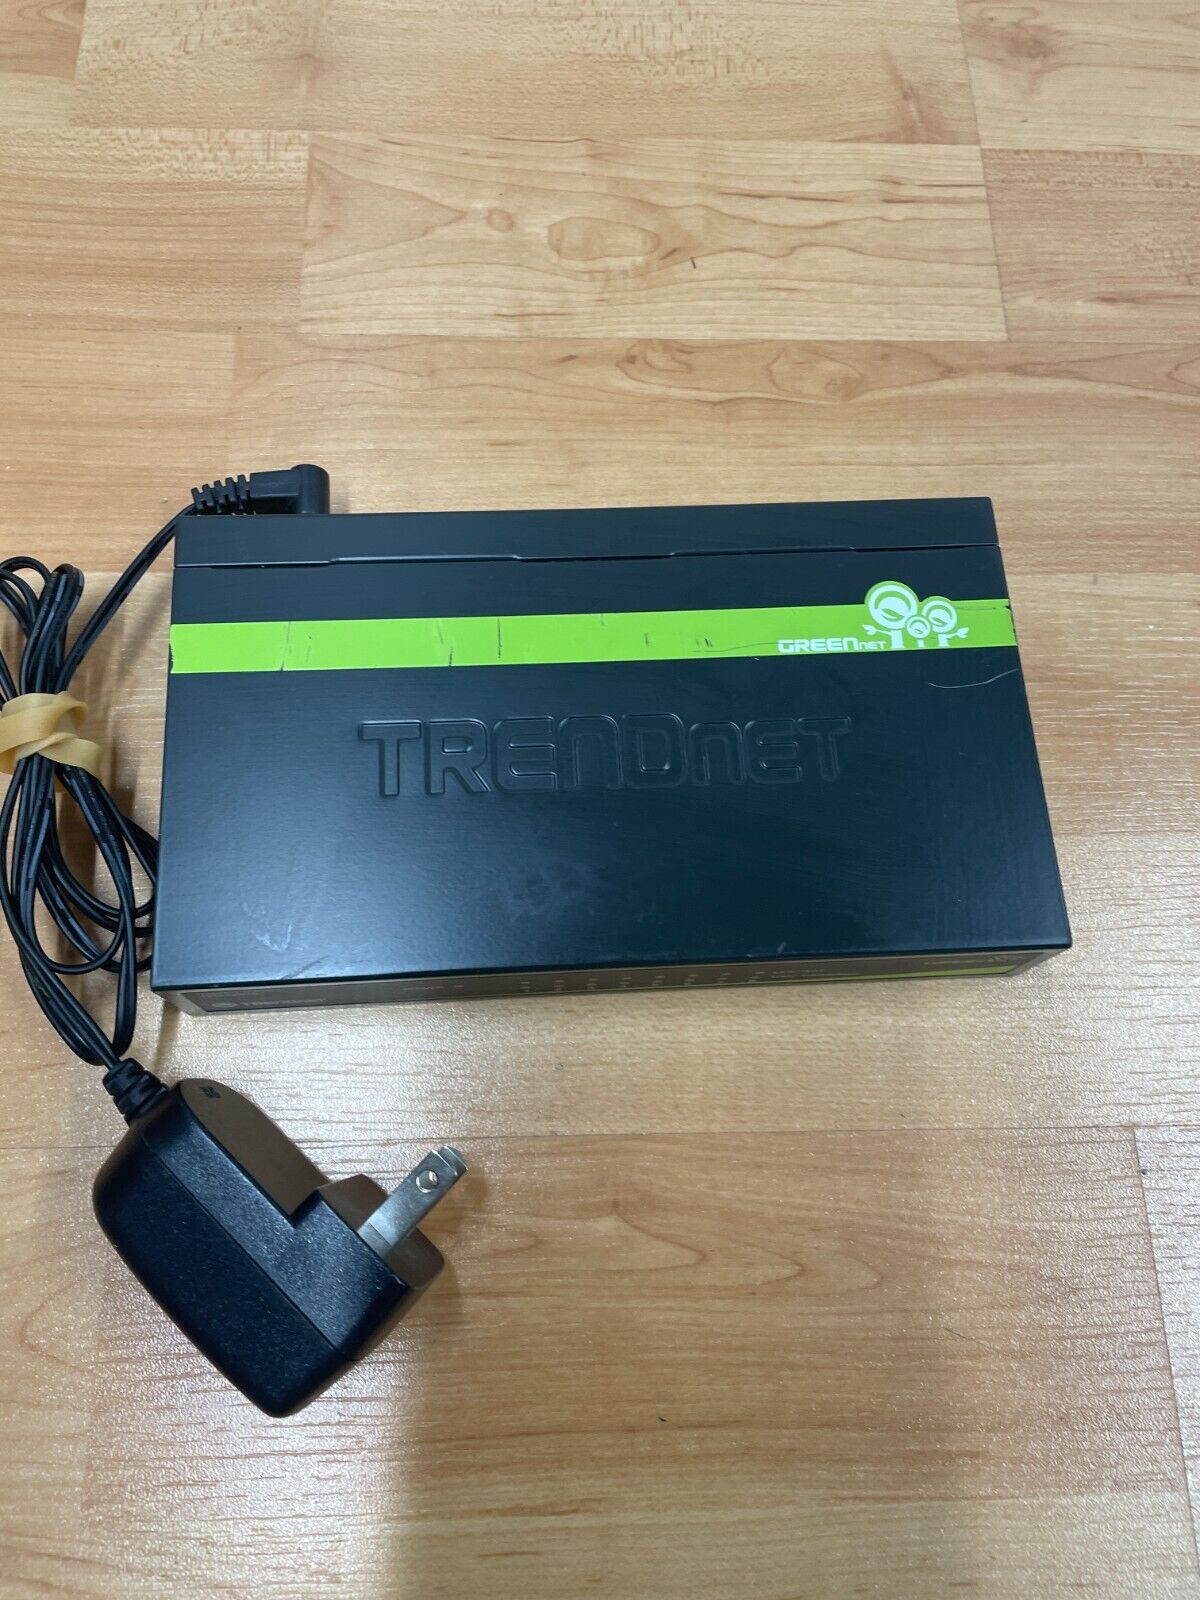 Trendnet GreenNet TEG-S82g 8-port Gigabit Switch w/ Power Supply